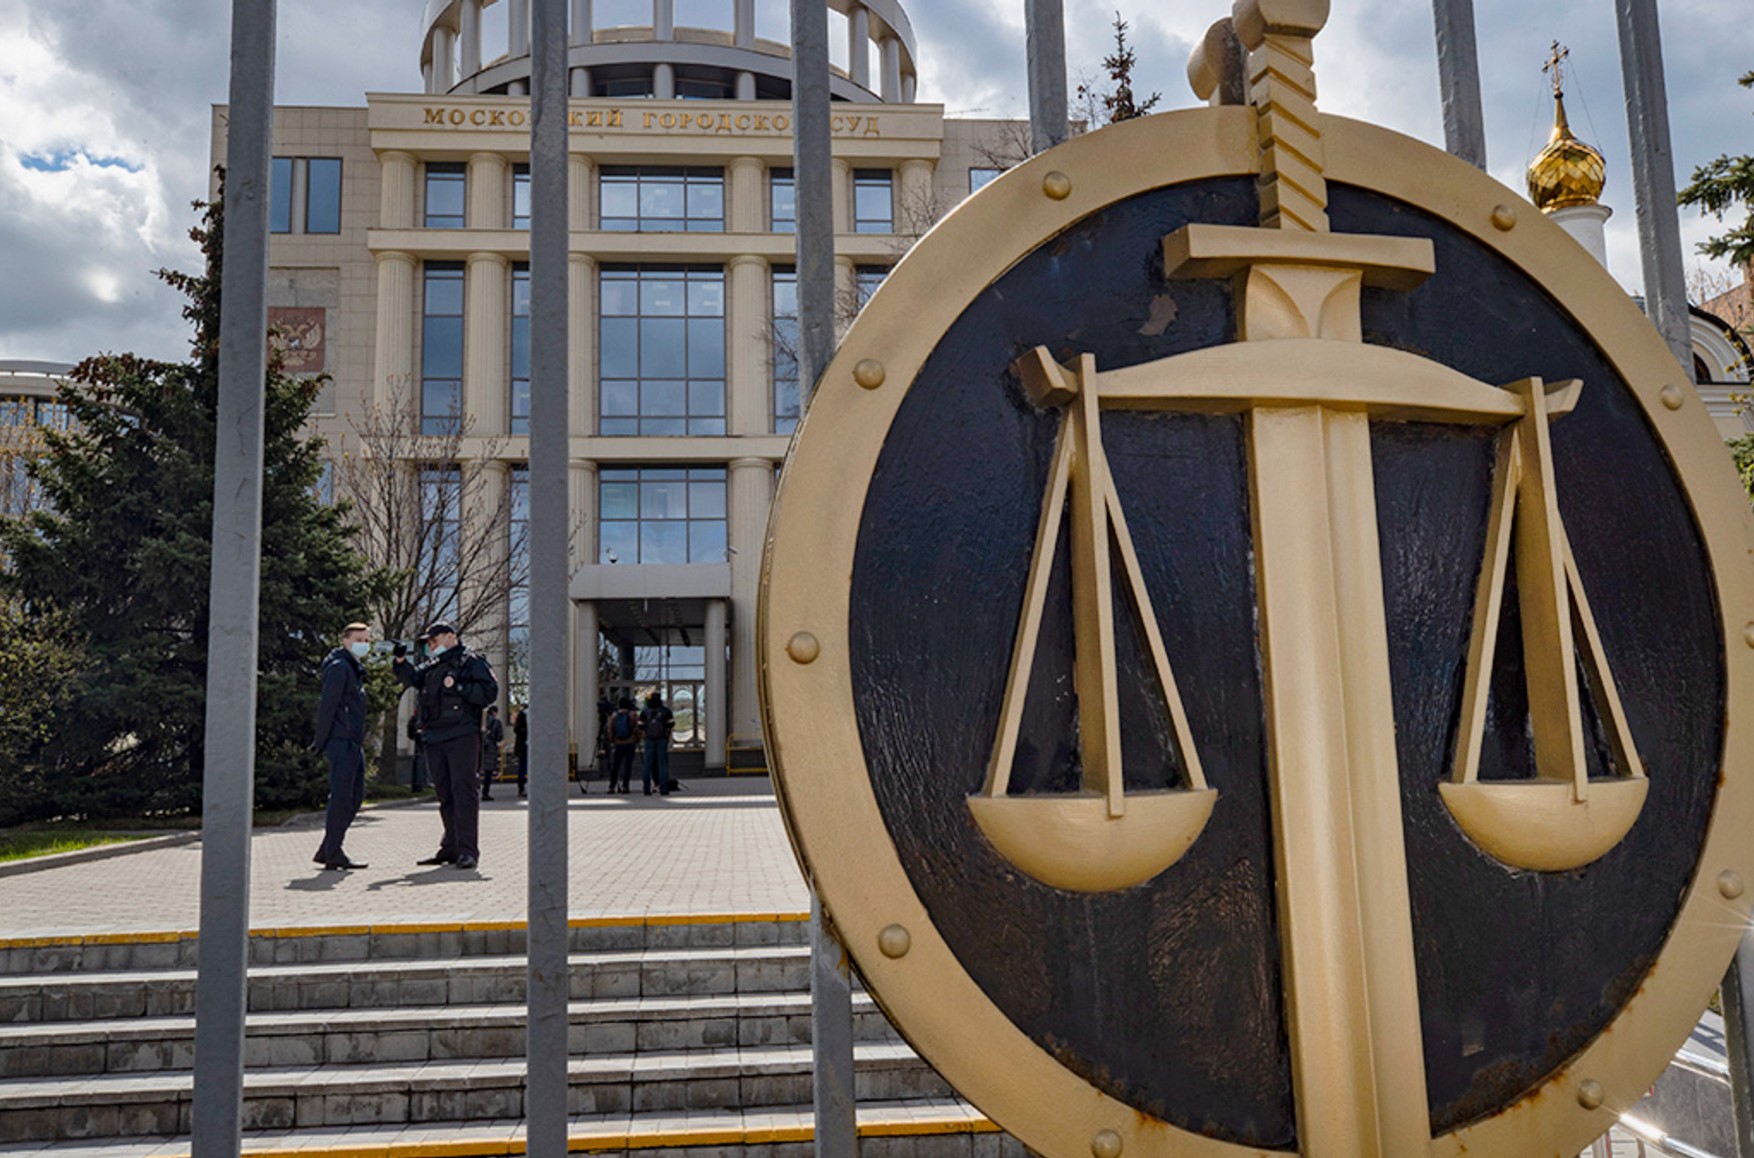 Захист оскаржив рішення суду про визнання ФБК «екстремістською організацією»